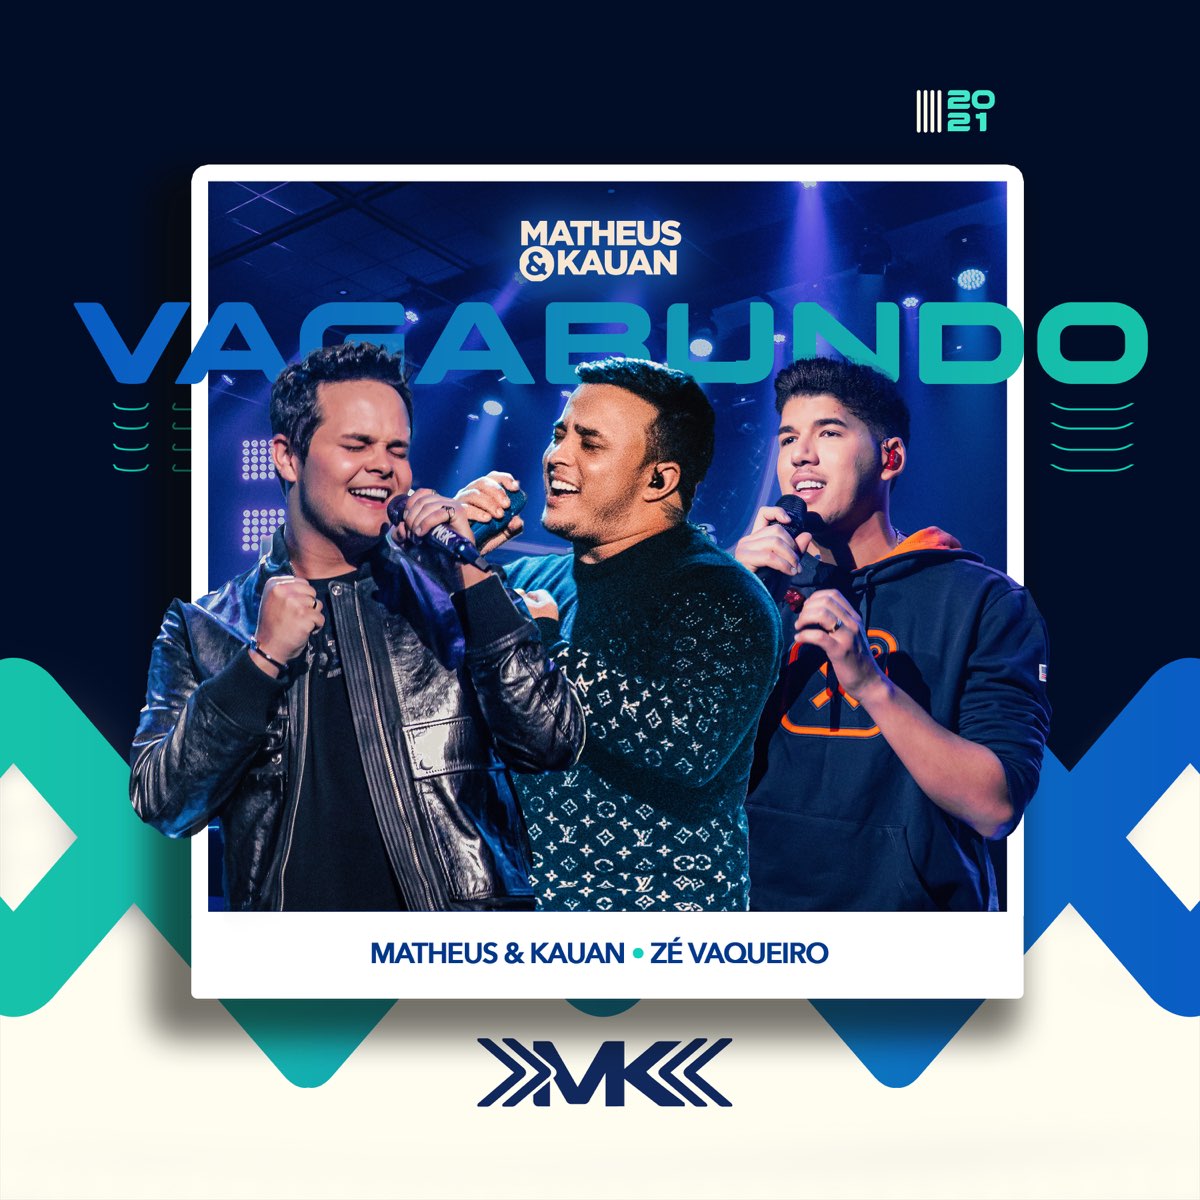 Vagabundo - Single de Matheus & Kauan & Zé Vaqueiro no Apple Music